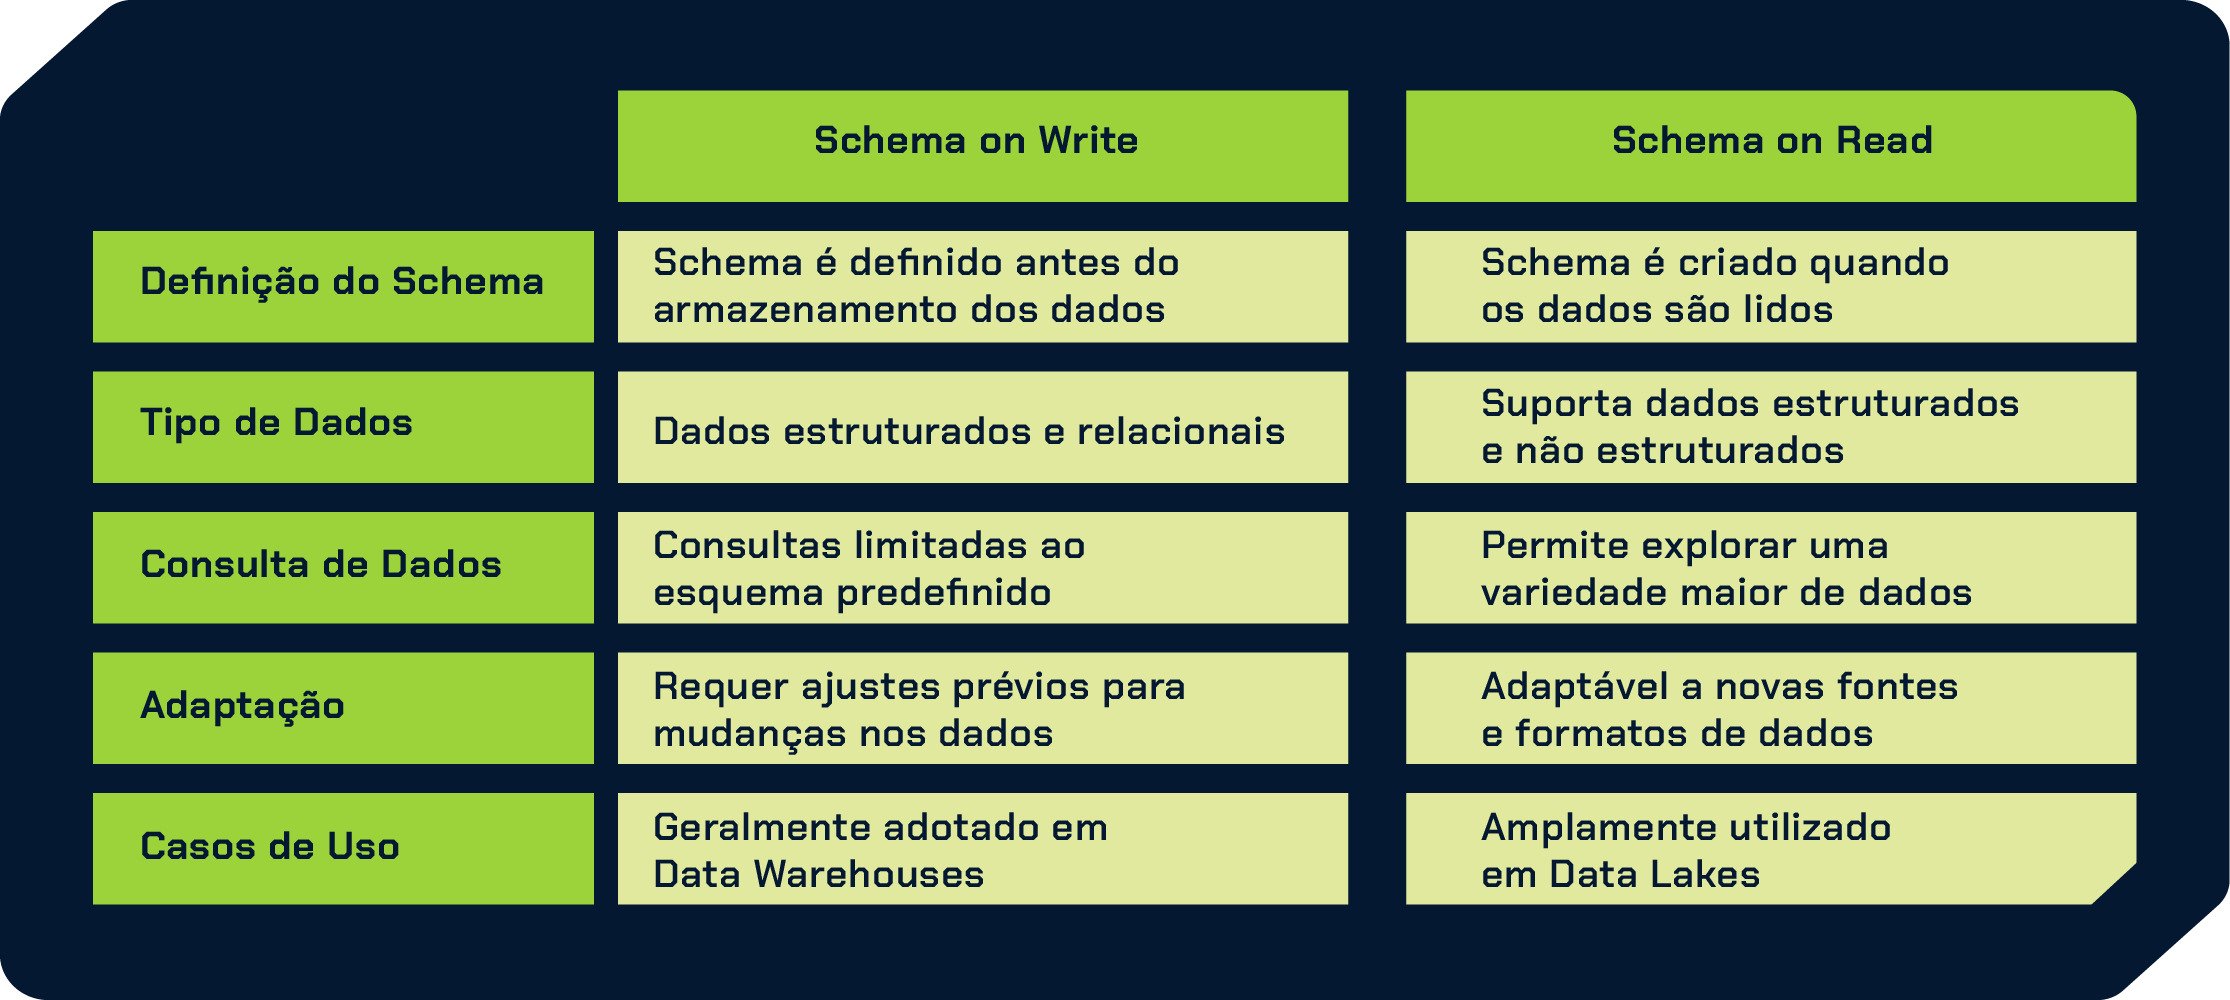 Tabela de comparação de Schema on Write e Schema on Read. Na primeira linha, temos o tema “Definição do Schema”, seguindo a ordem da esquerda para direita, na coluna "Schema on Write", conteúdo em texto, “Schema é definido antes do armazenamento dos dados". Na coluna "Schema on Read",  o texto, “Schema é criado quando os dados são lidos.”. Na segunda linha com o tema “Tipo de Dados”, onde na coluna "Schema on Write", o texto, “Dados estruturados e relacionais.”, na coluna "Schema on Read", o texto, “Suporta dados estruturados e não estruturados”. Na terceira linha, com tema “Consulta de Dados”, coluna "Schema on Write", o texto, “Consultas limitadas ao esquema predefinido.”, na coluna "Schema on Read",o texto, “Permite explorar uma variedade maior de dados”.Na quarta linha, com tema “Adaptação”, coluna "Schema on Write", o texto, “Requer ajustes prévios para mudanças nos dados.”, na coluna "Schema on Read",o texto, “Adaptável a novas fontes e formatos de dados”. Na quinta linha, com o tema ”Casos de Uso”, a coluna "Schema on Write", com texto, “Geralmente adotado em Data Warehouses”, na coluna "Schema on Read", com texto, “Amplamente utilizado em Data Lakes”.